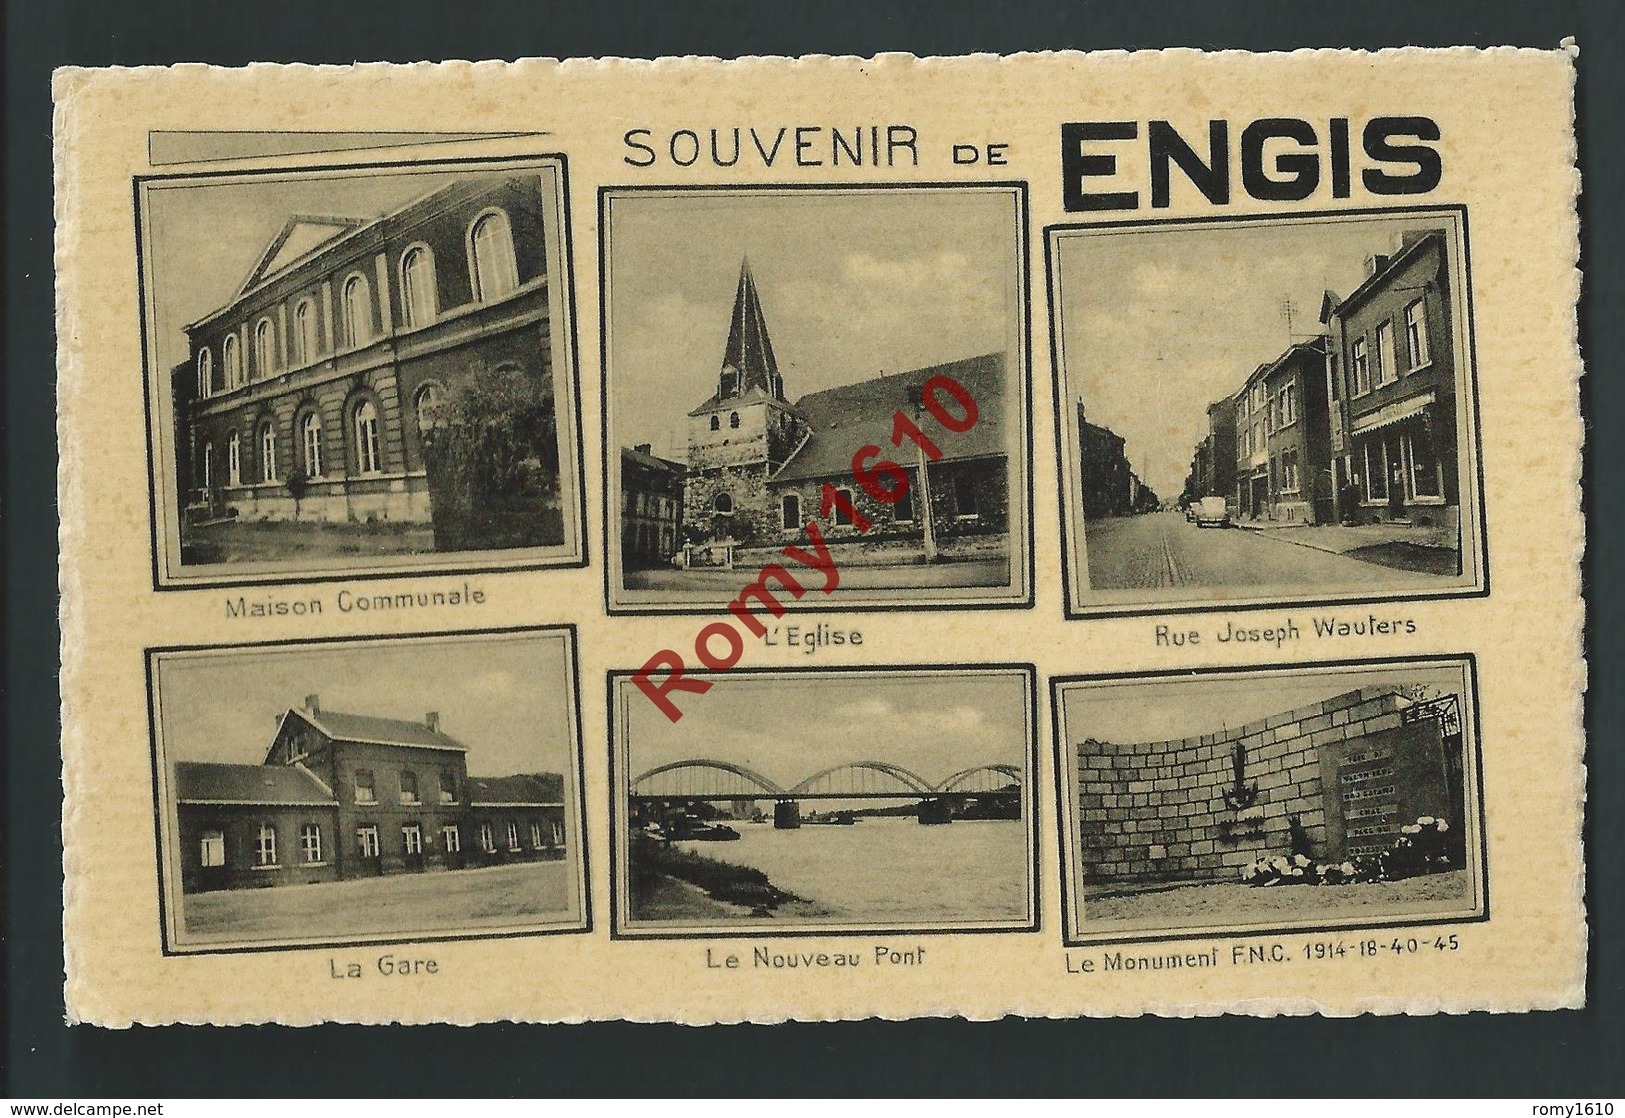 Souvenir De Engis - Multi-vues: Maison Communale, Eglise, Rue Joseph Wauters, Gare, Nouveau Pont, Monument F.N.C. - Engis